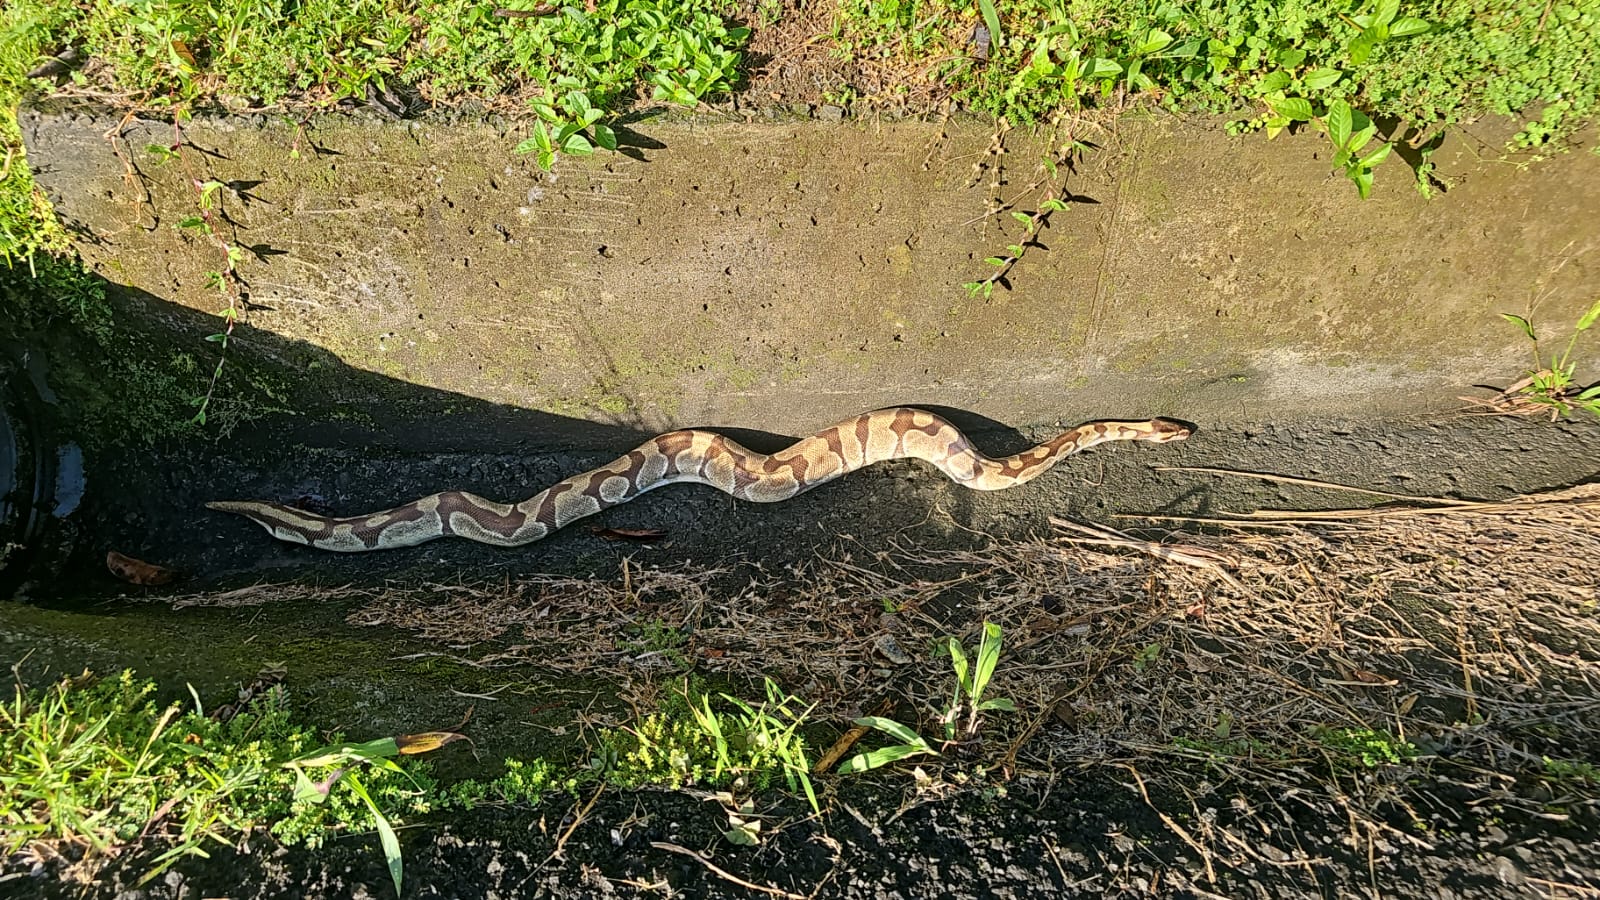     Un python royal récupéré dans un canal à Saint-Joseph

